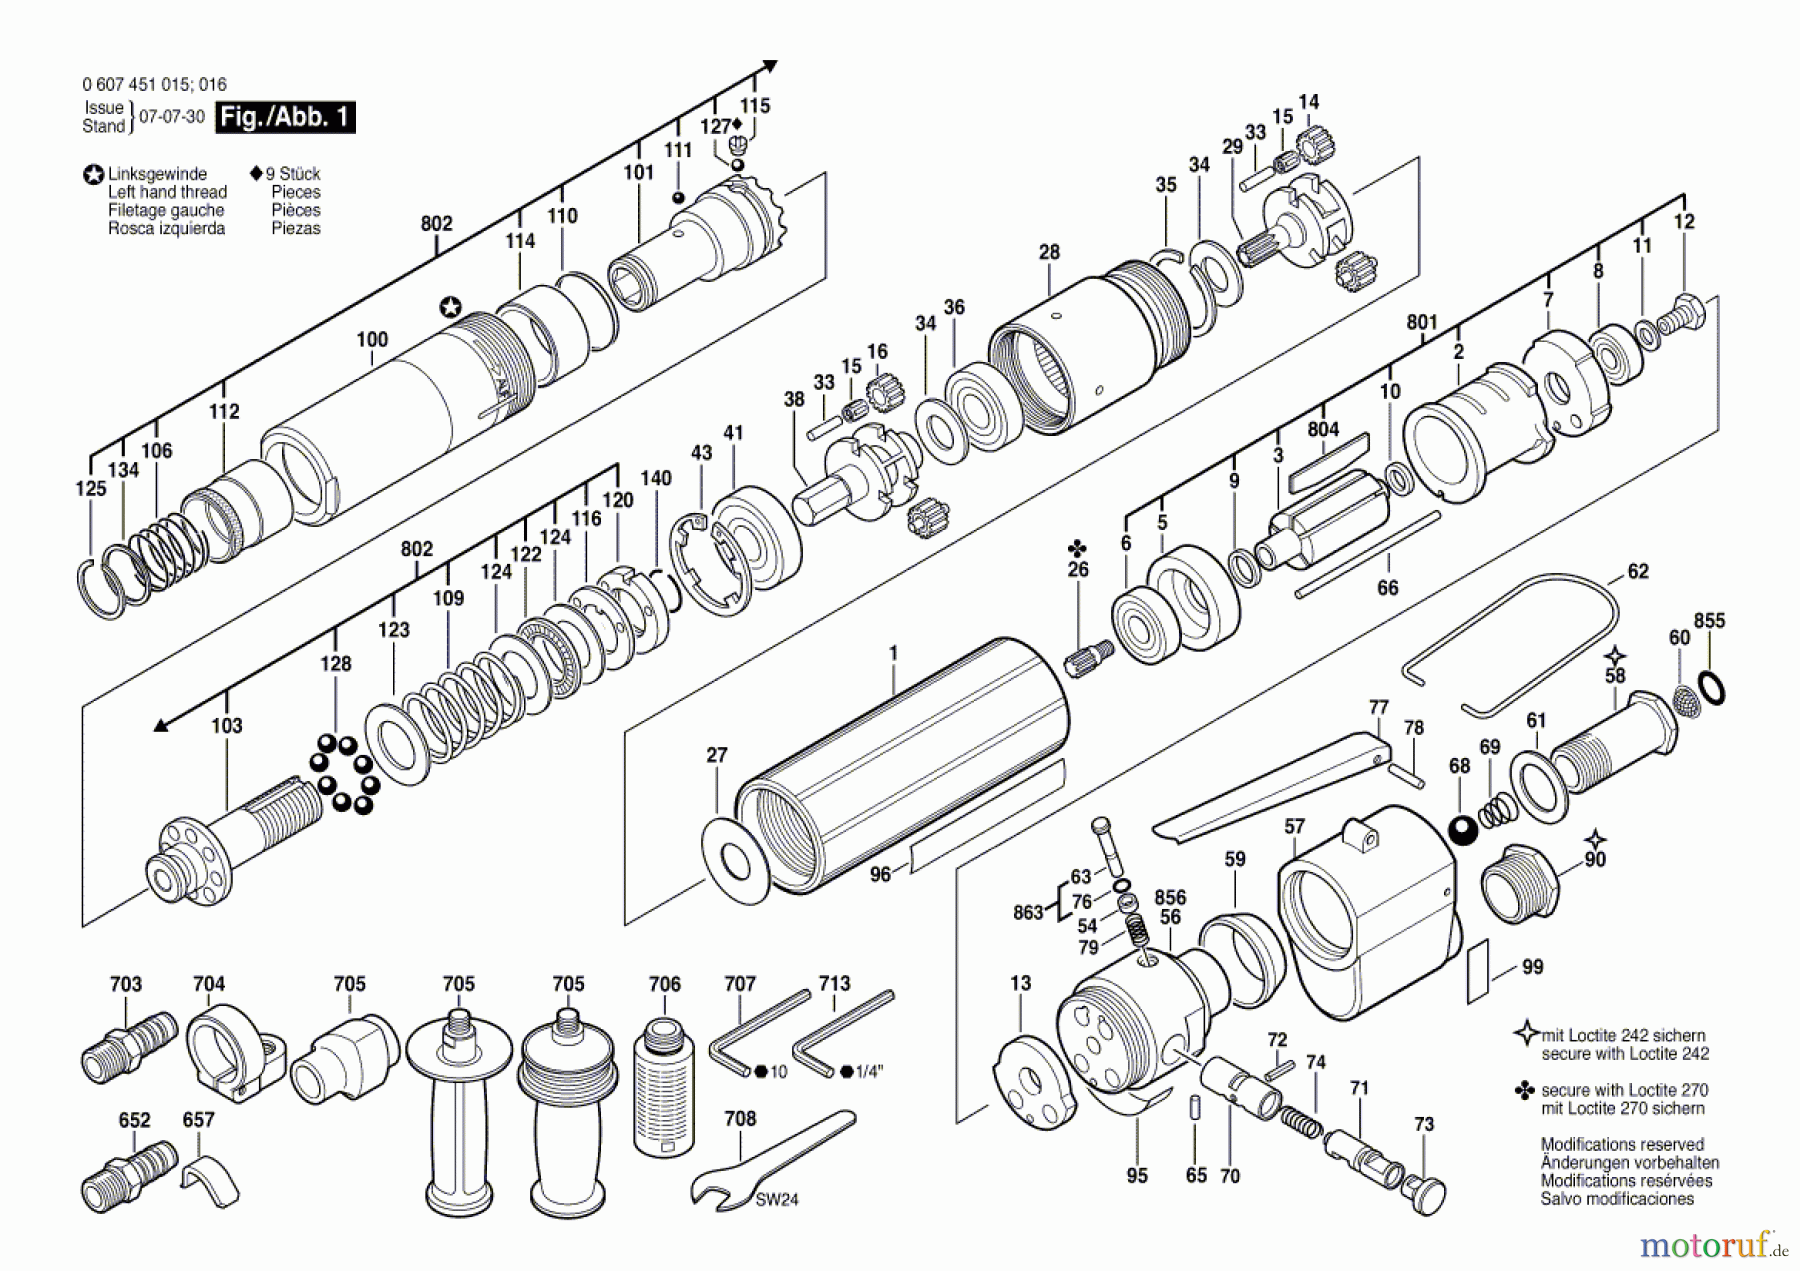  Bosch Werkzeug Pw-Schrauber-Ind 370 WATT-SERIE Seite 1